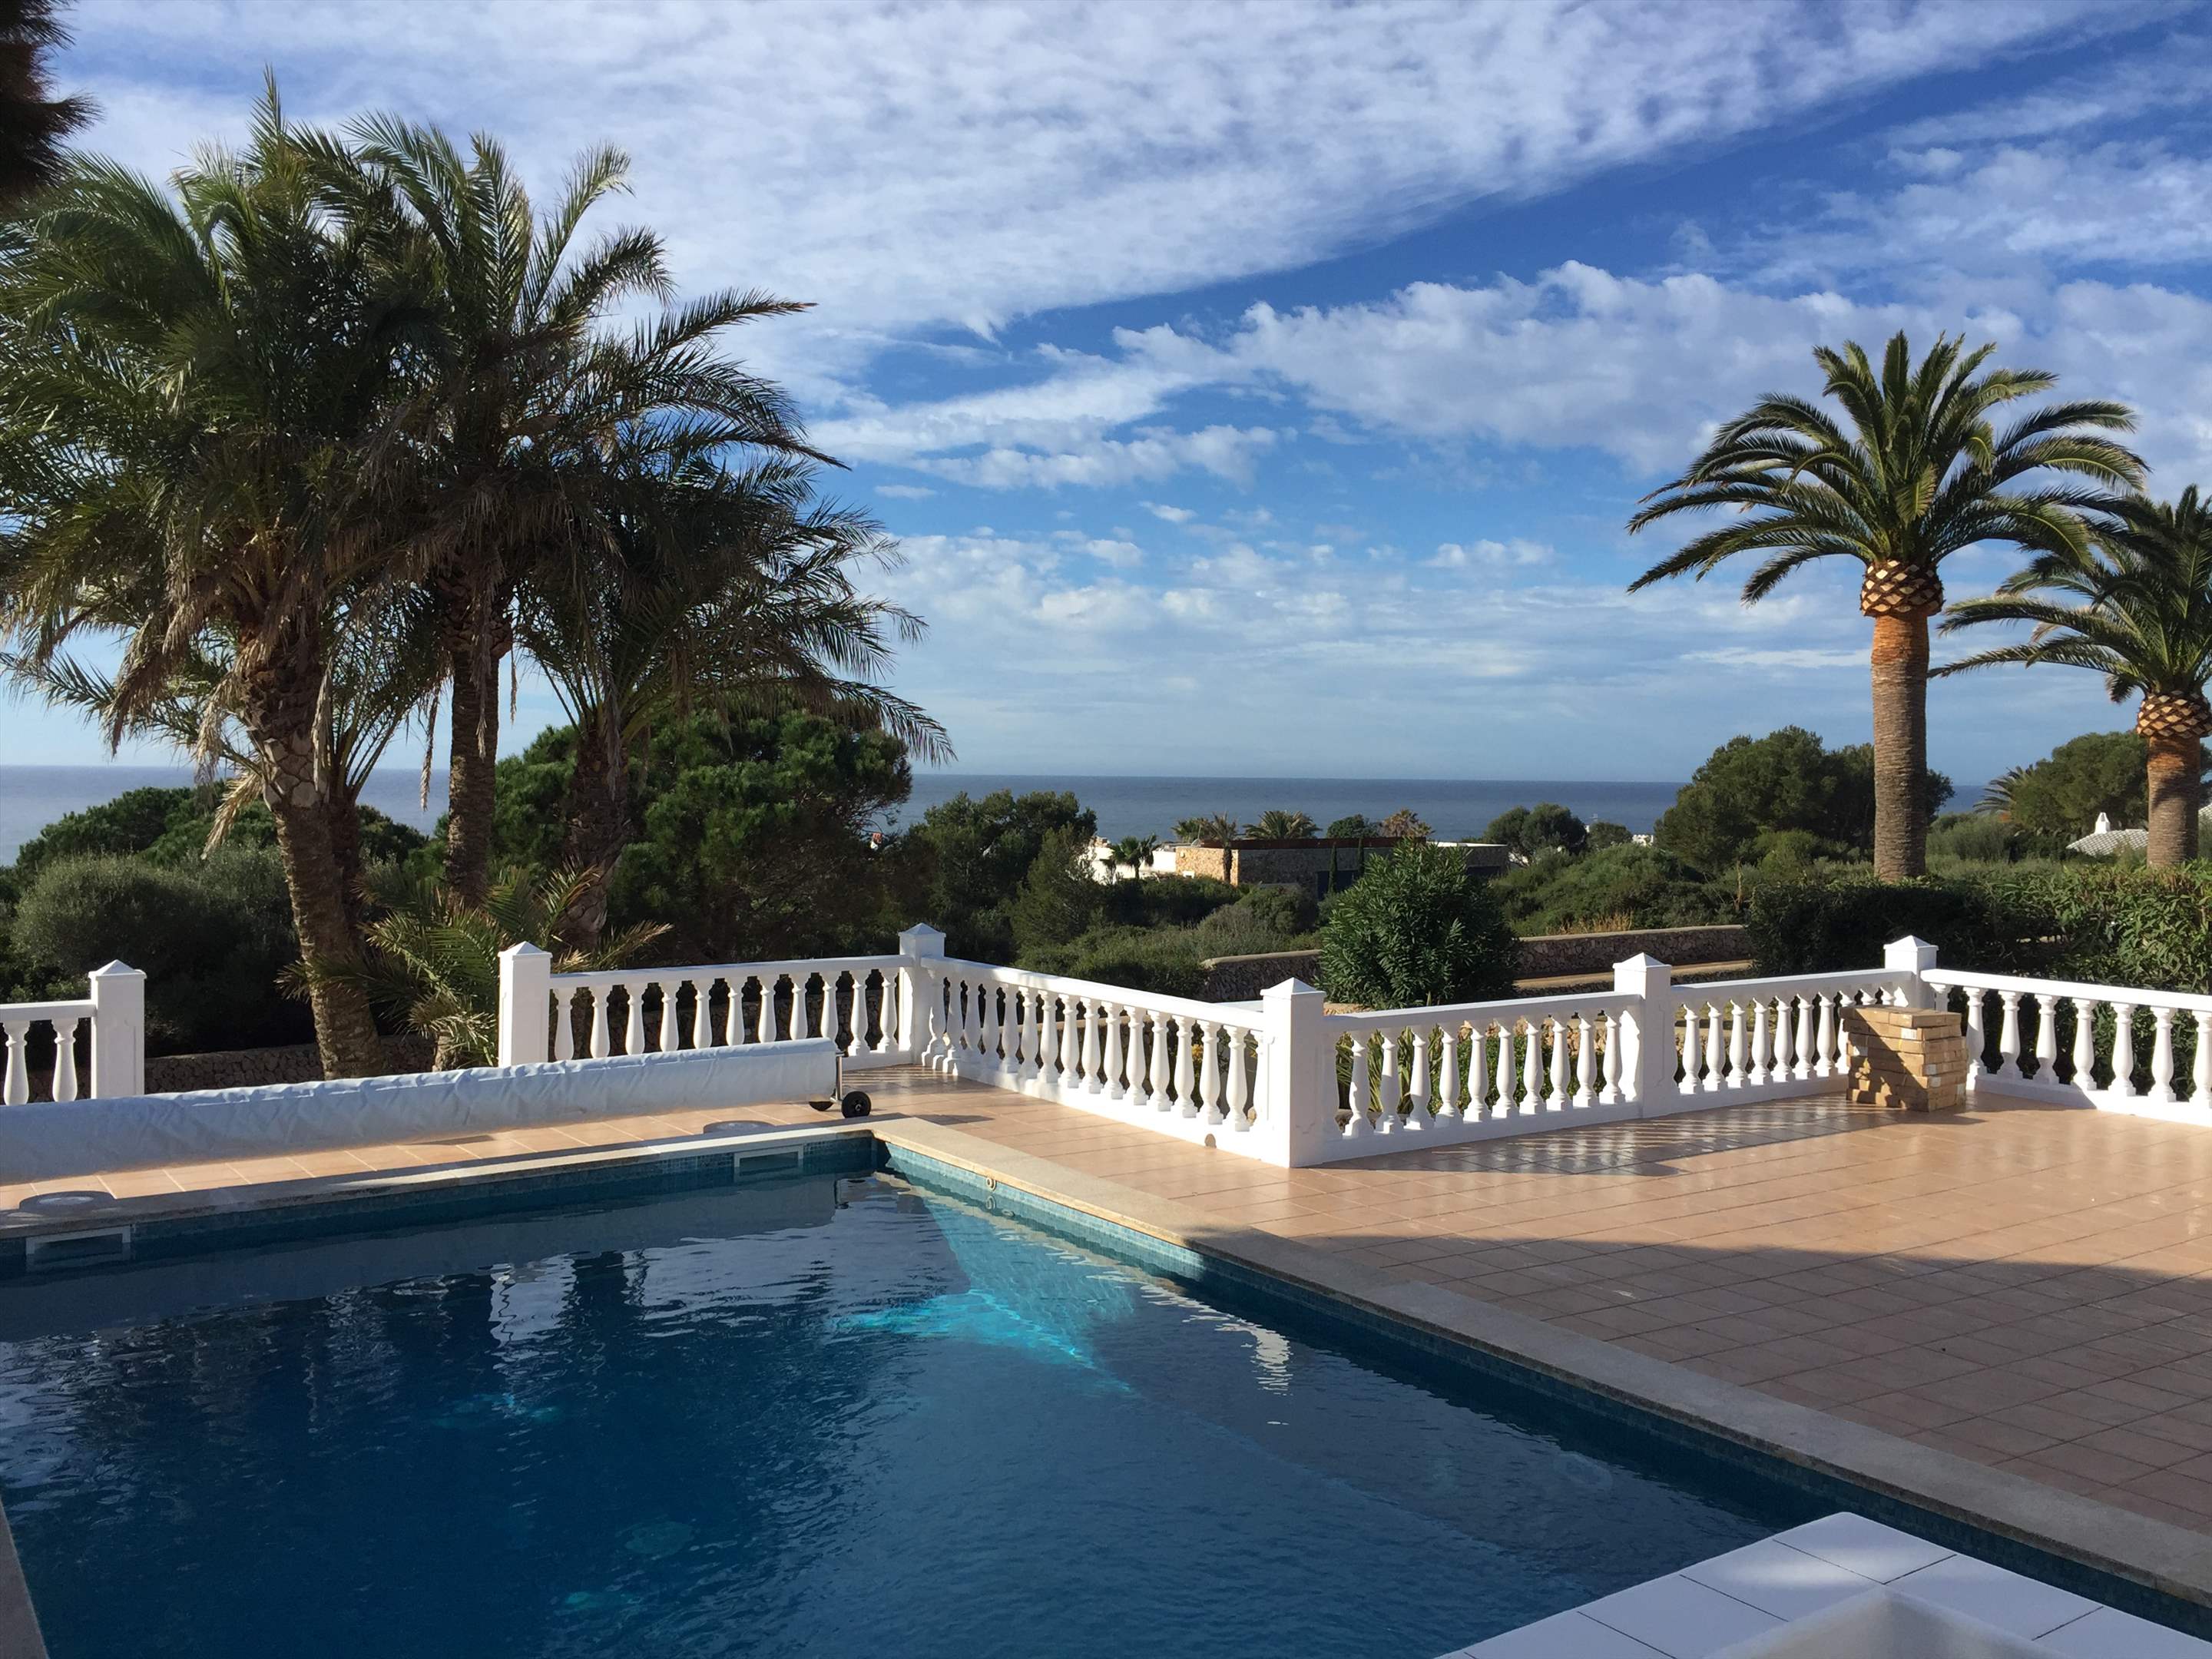 Casa del Mar de Ana-Cristo, 5 Bedroom rate, 5 bedroom villa in Mahon, San Luis & South East, Menorca Photo #3